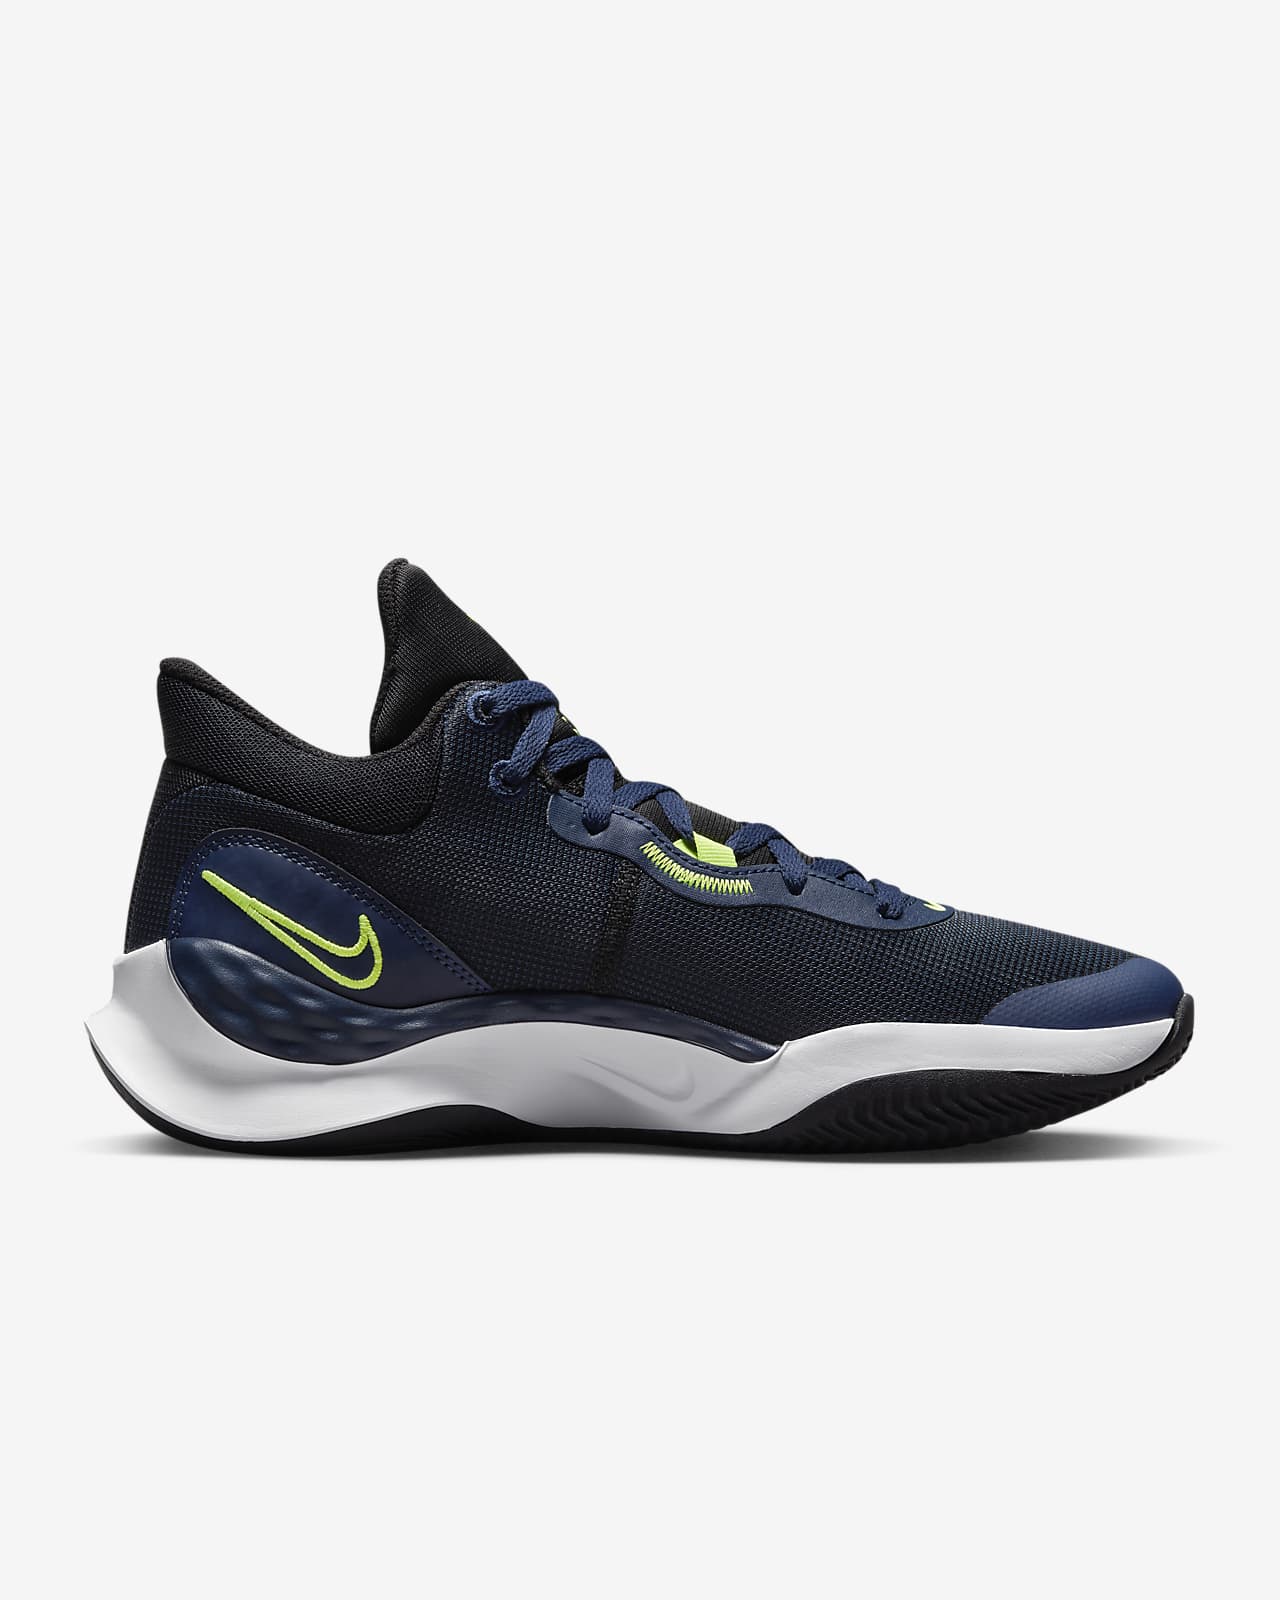 Nike Elevate 3 Basketball Shoes. Nike ID